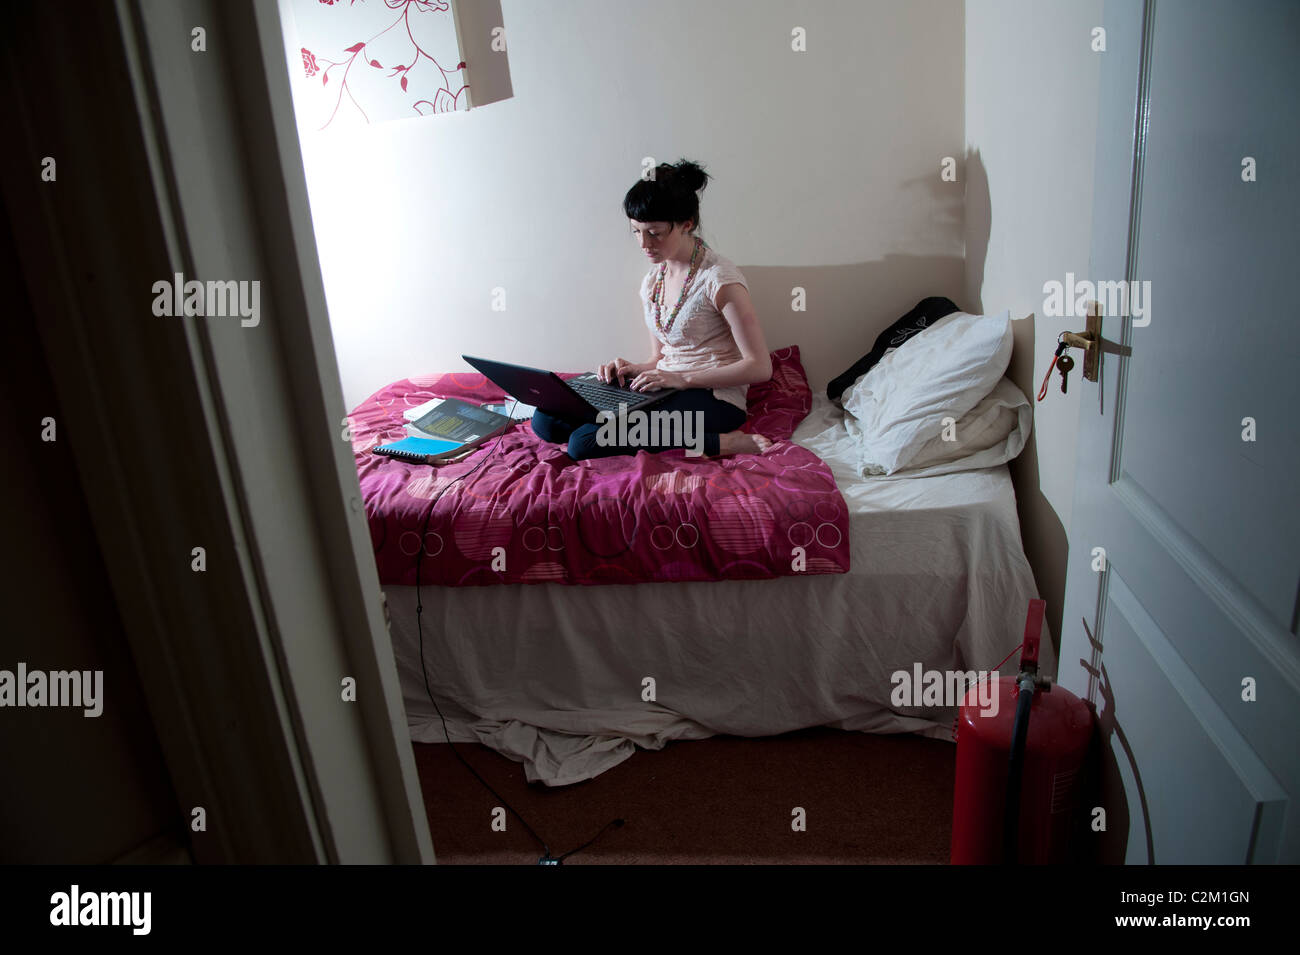 Une jeune femme fille UK university étudiant travaillant sur son ordinateur portable dans sa chambre à coucher à la maison, MySpace Facebook social network Banque D'Images